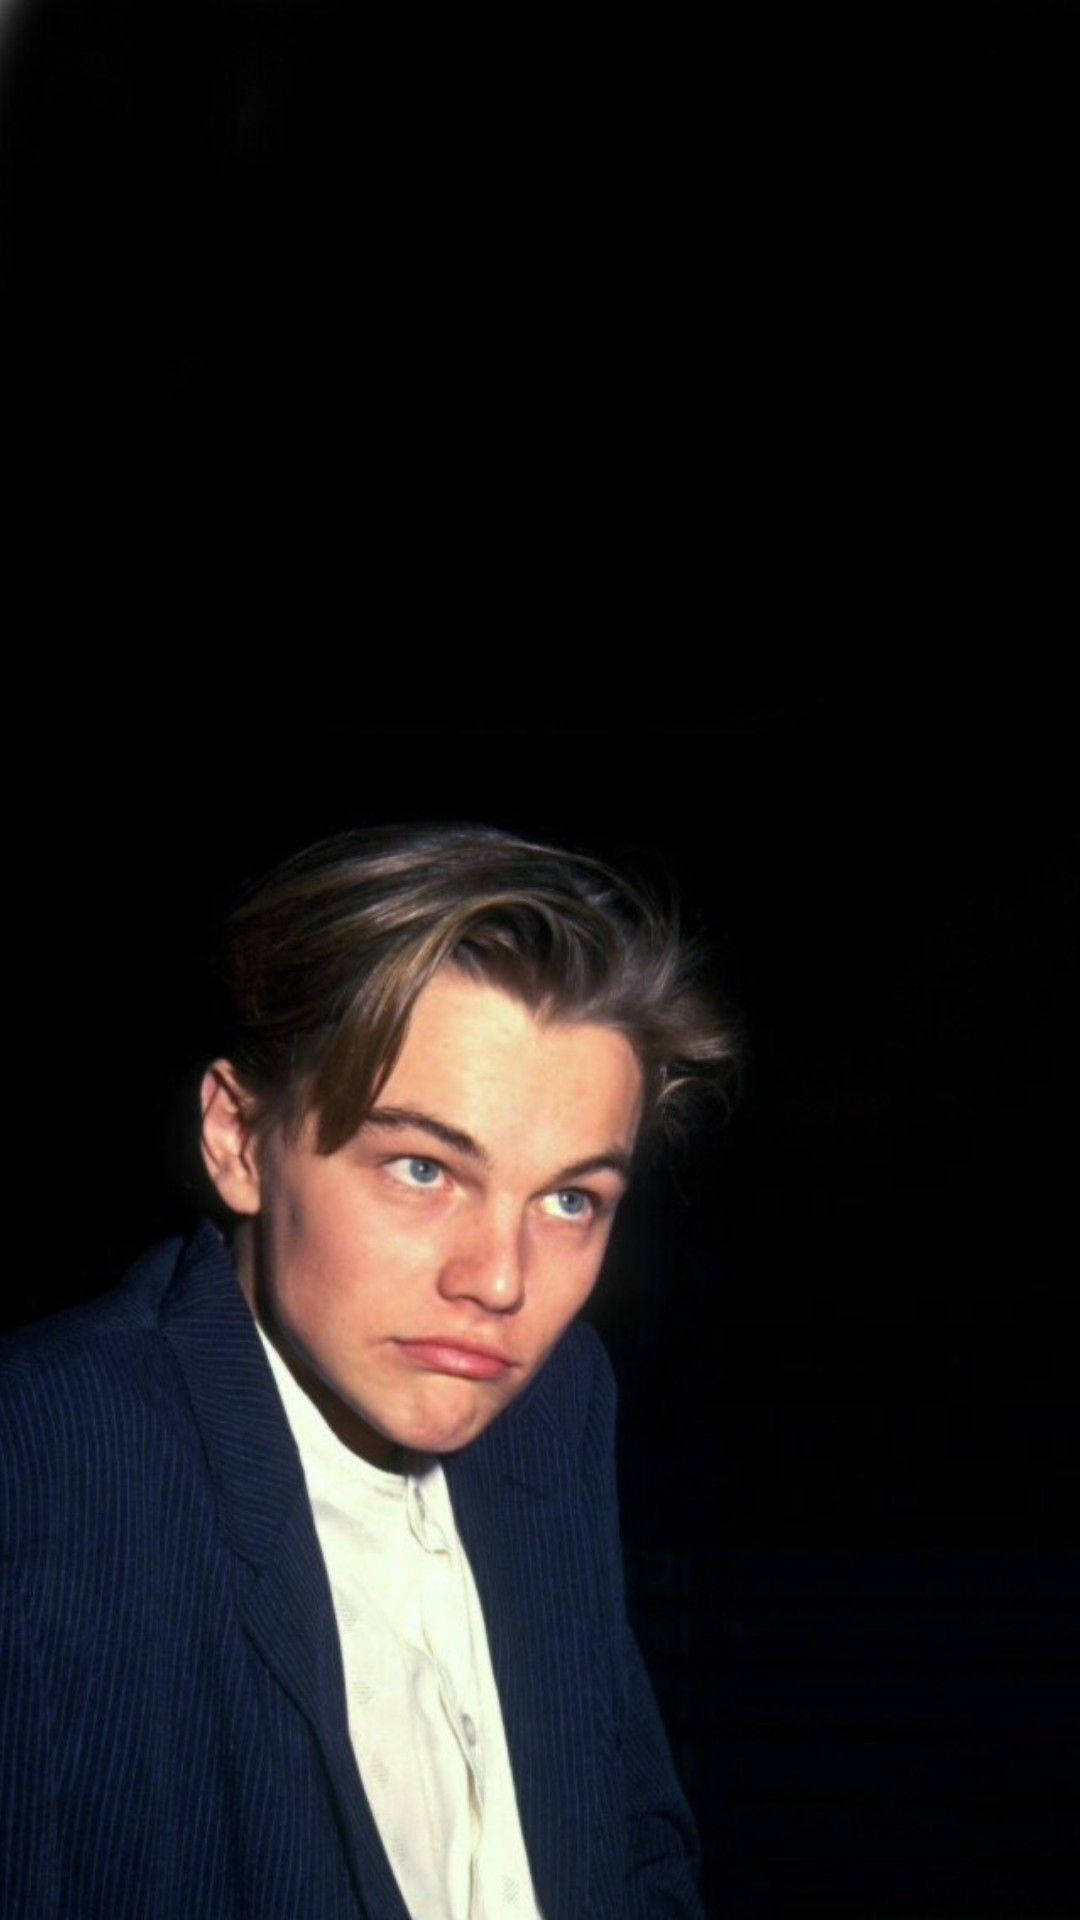 Leonardo Dicaprio Funny Face Background